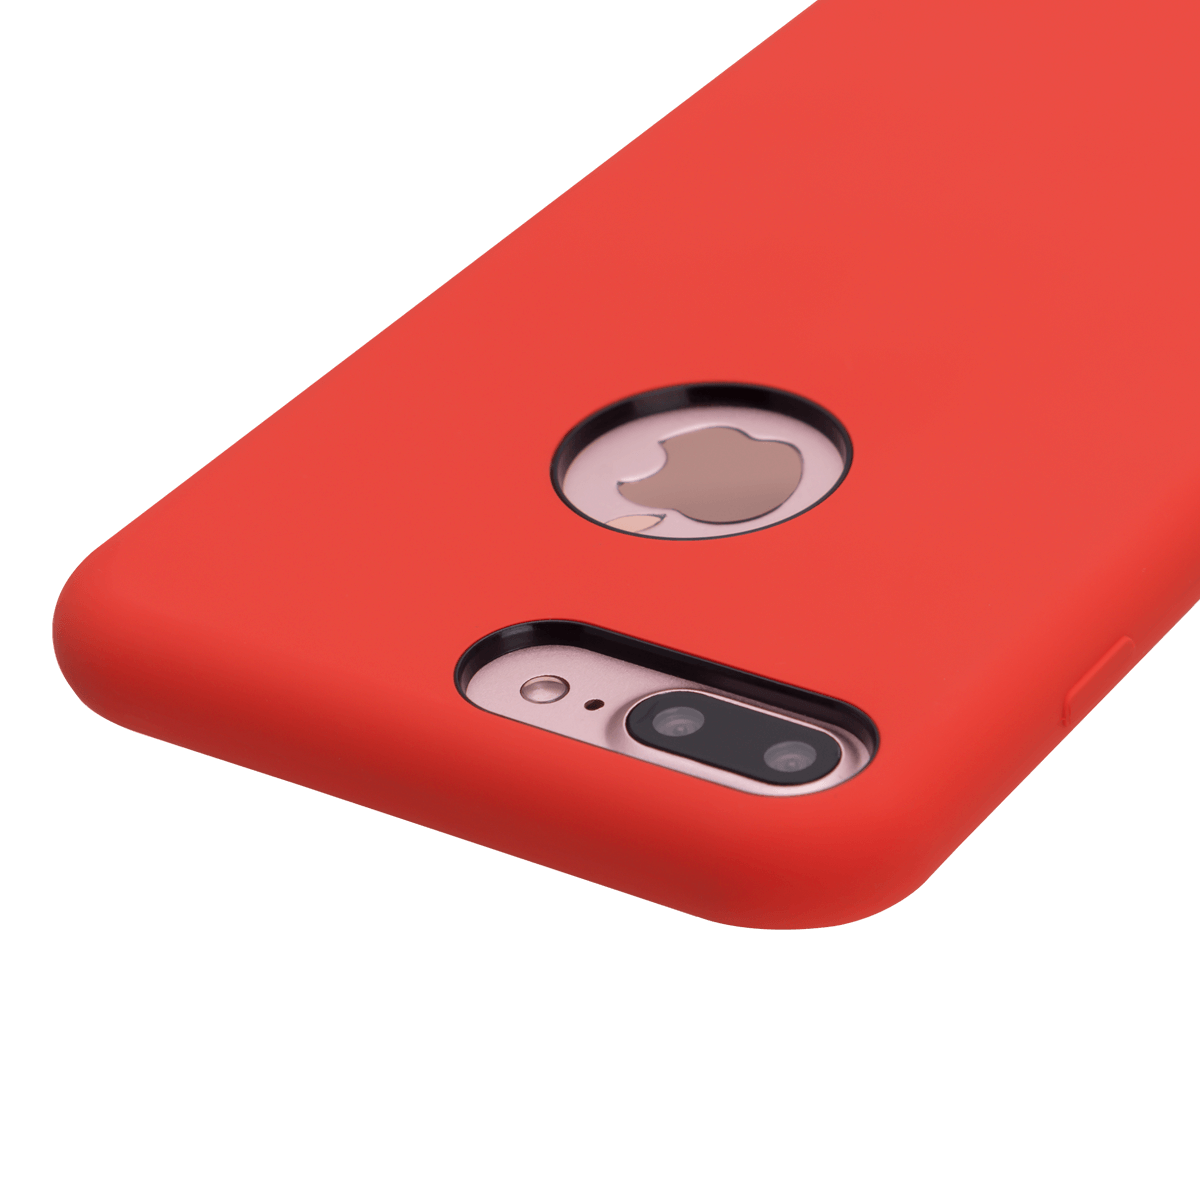 iPhone 7/8 Plus için spada Liquid Silikon Kırmızı renkli kapak